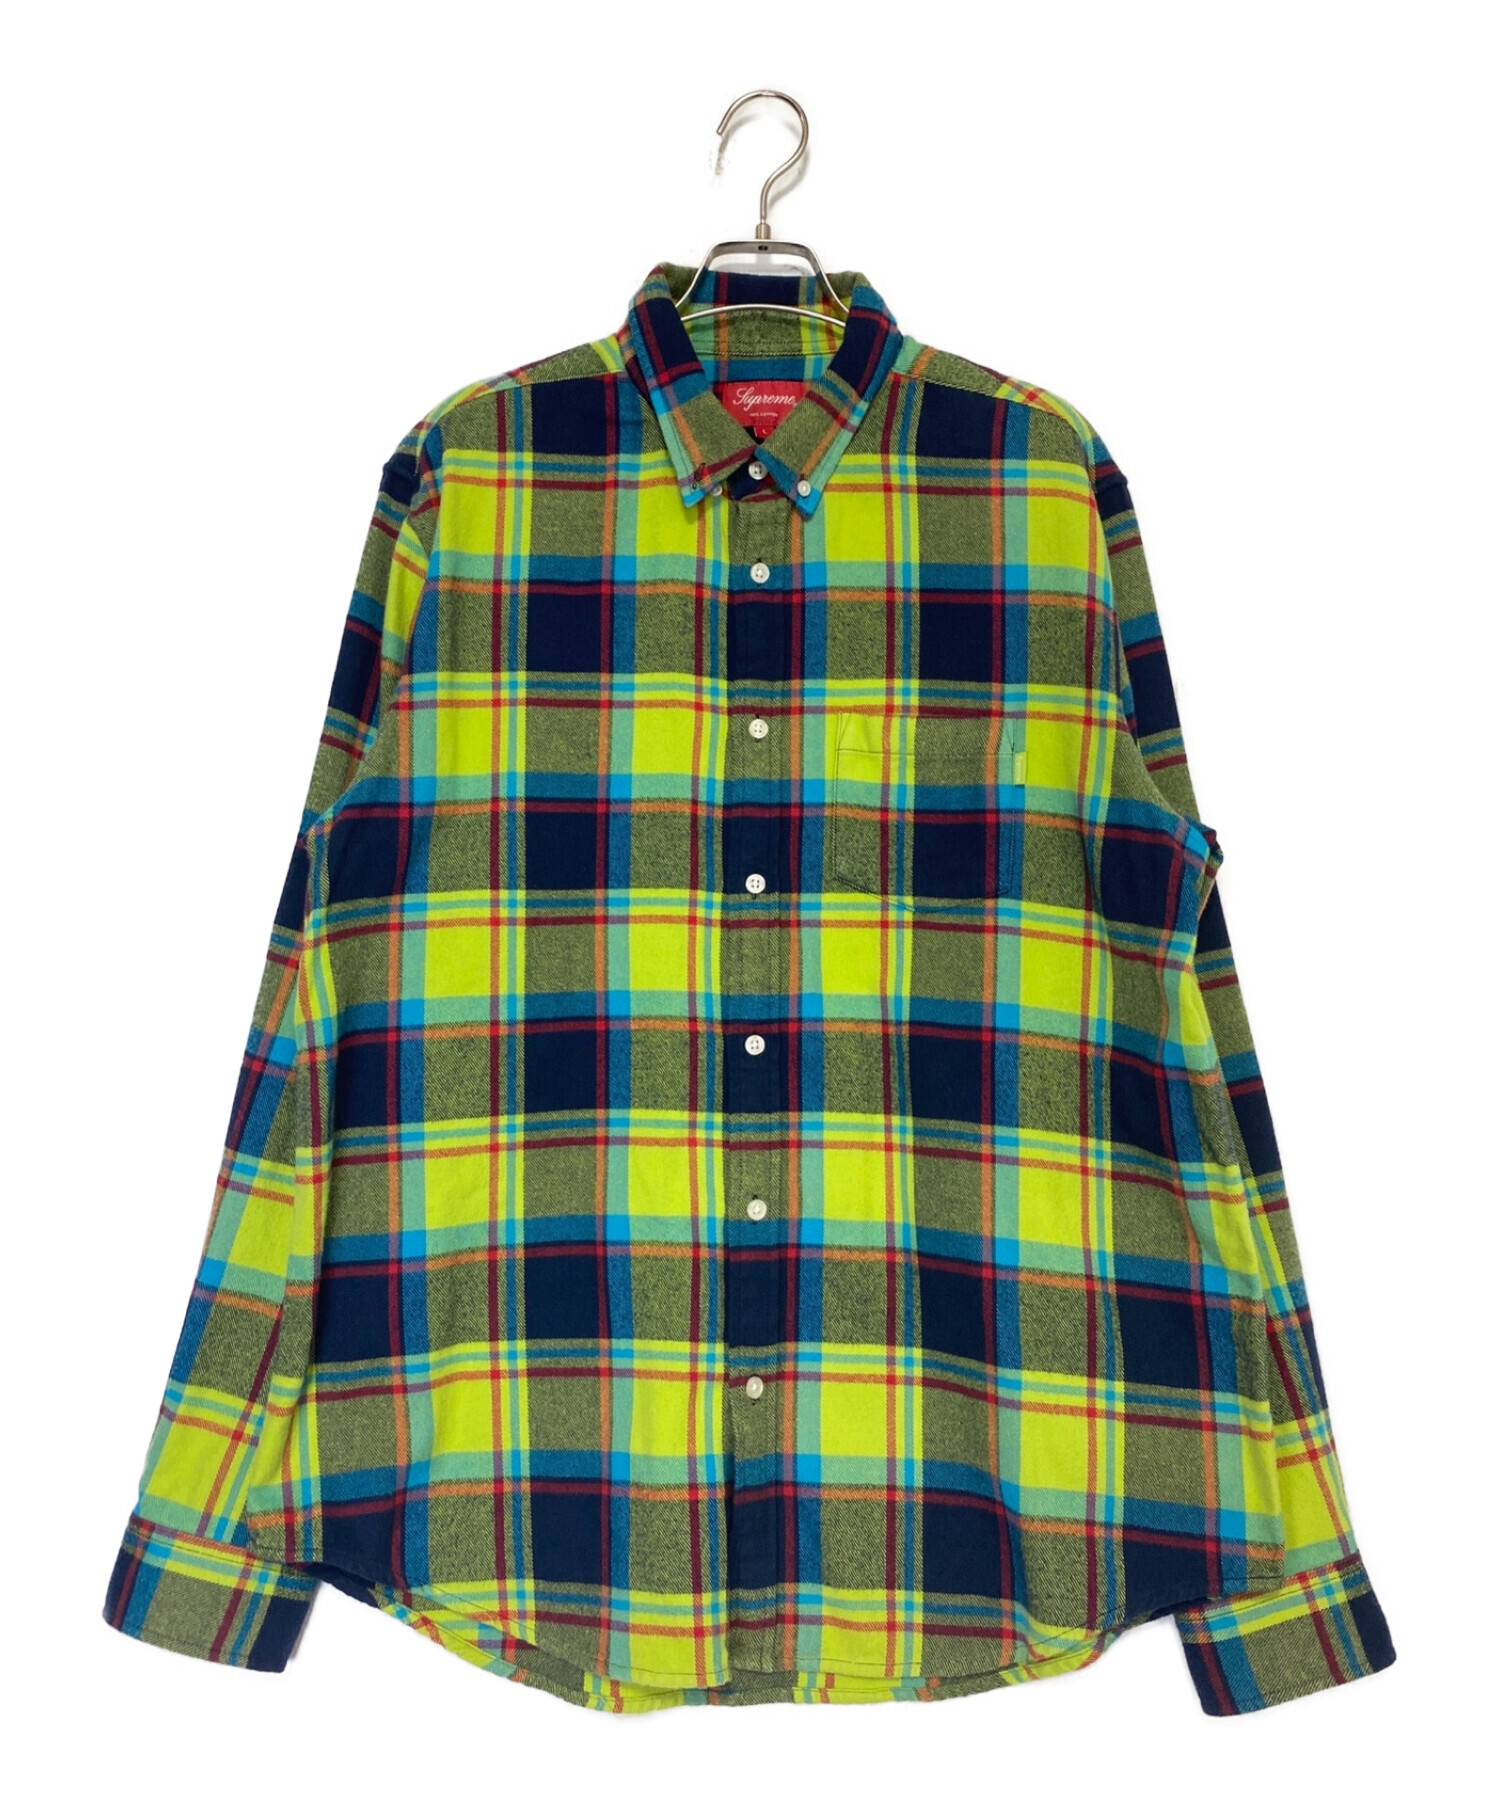 Supreme Plaid Flannel Shirt サイズL lime